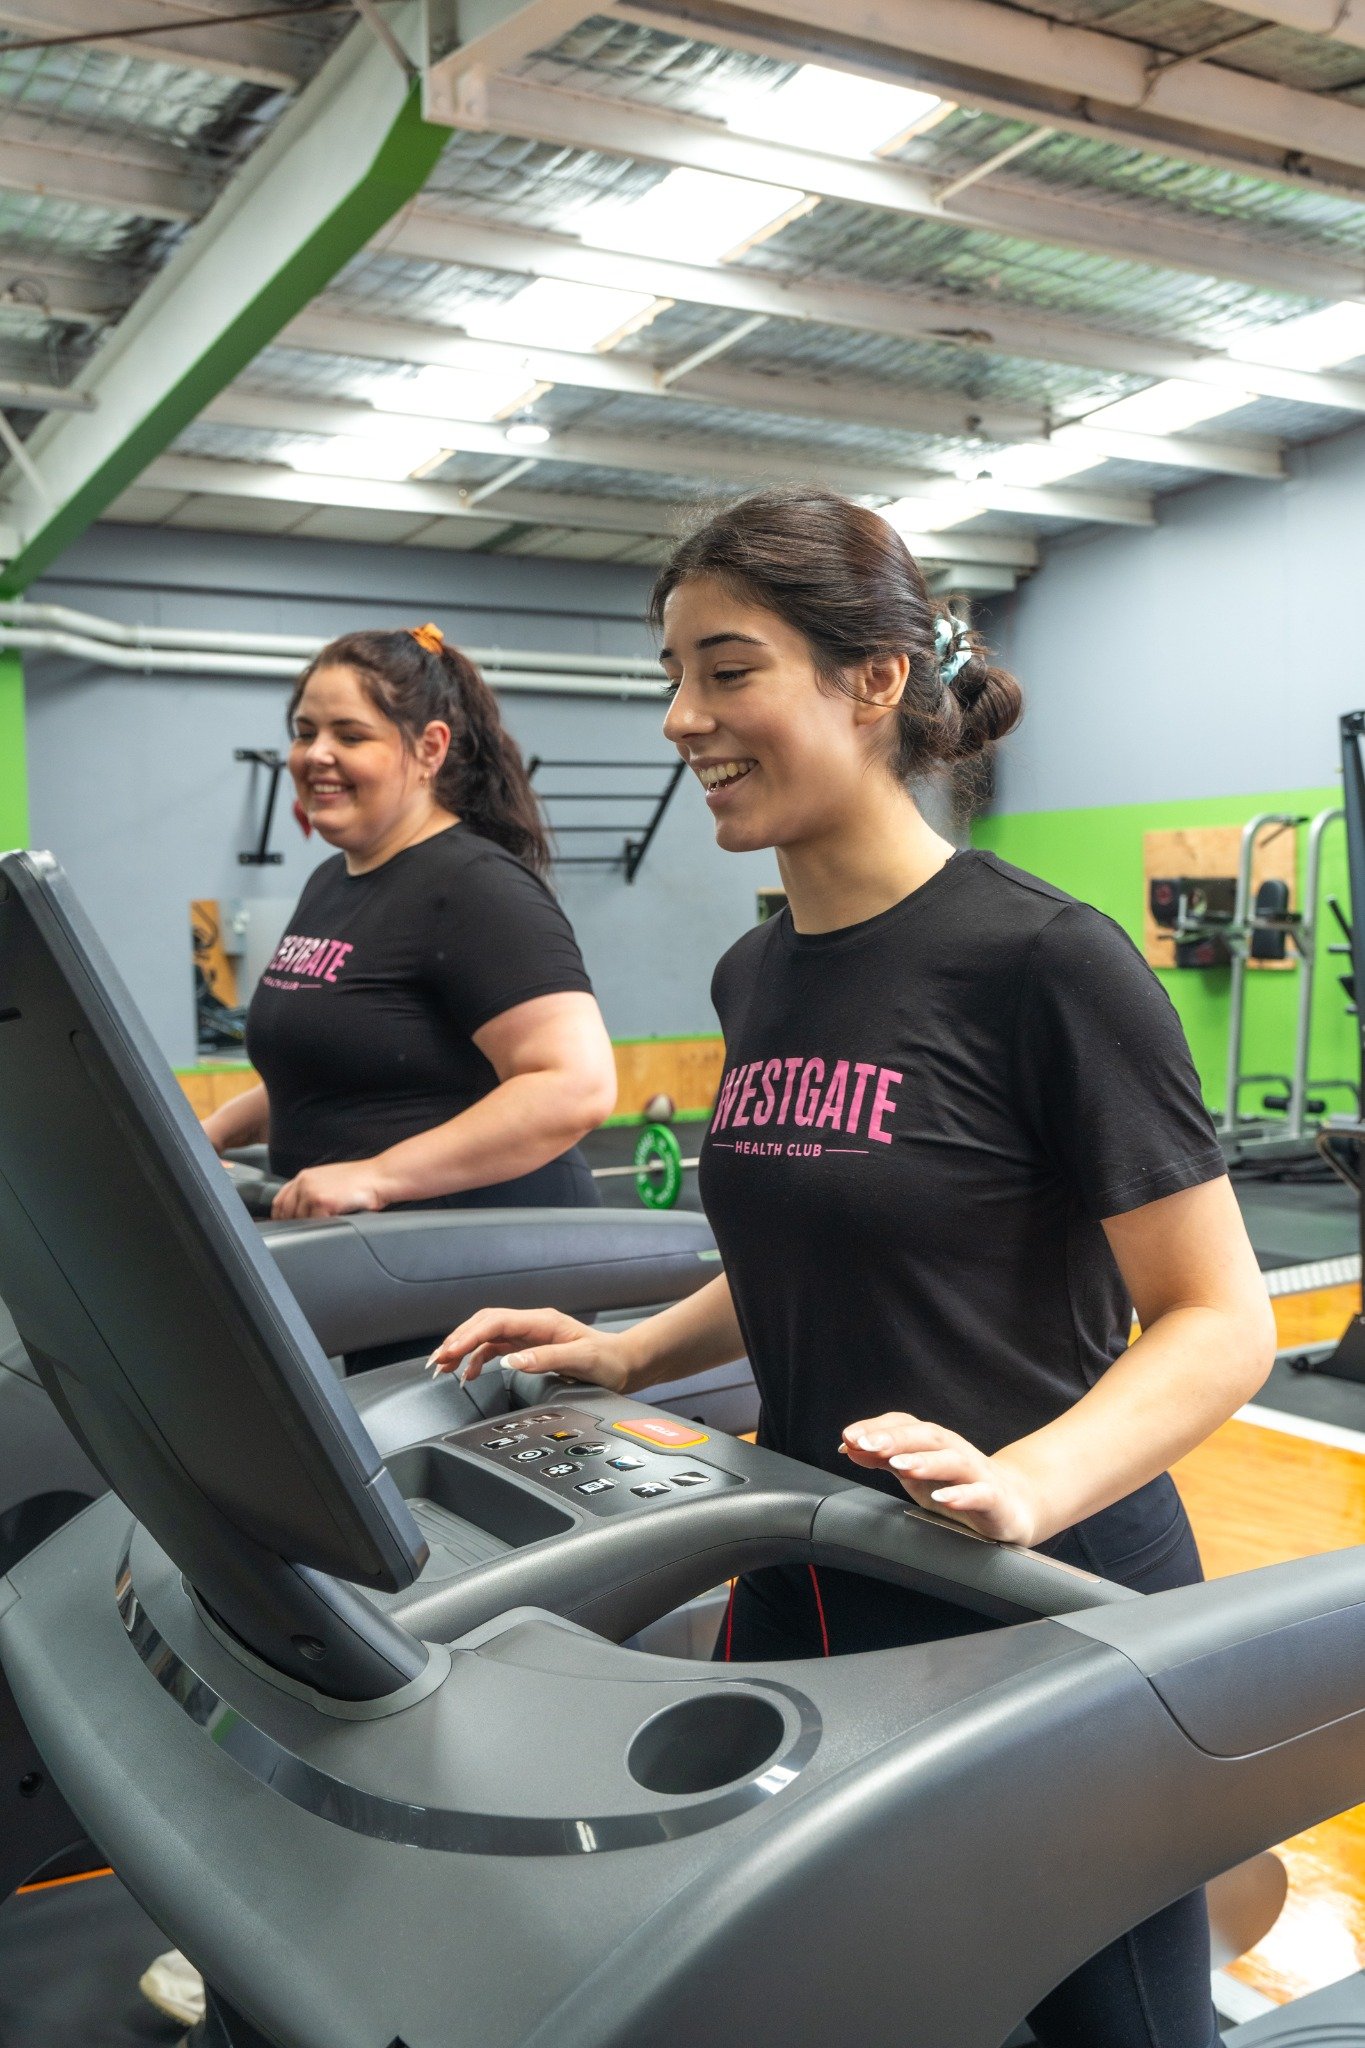 Gym-Westgate-Women-Running-Treadmill.jpg